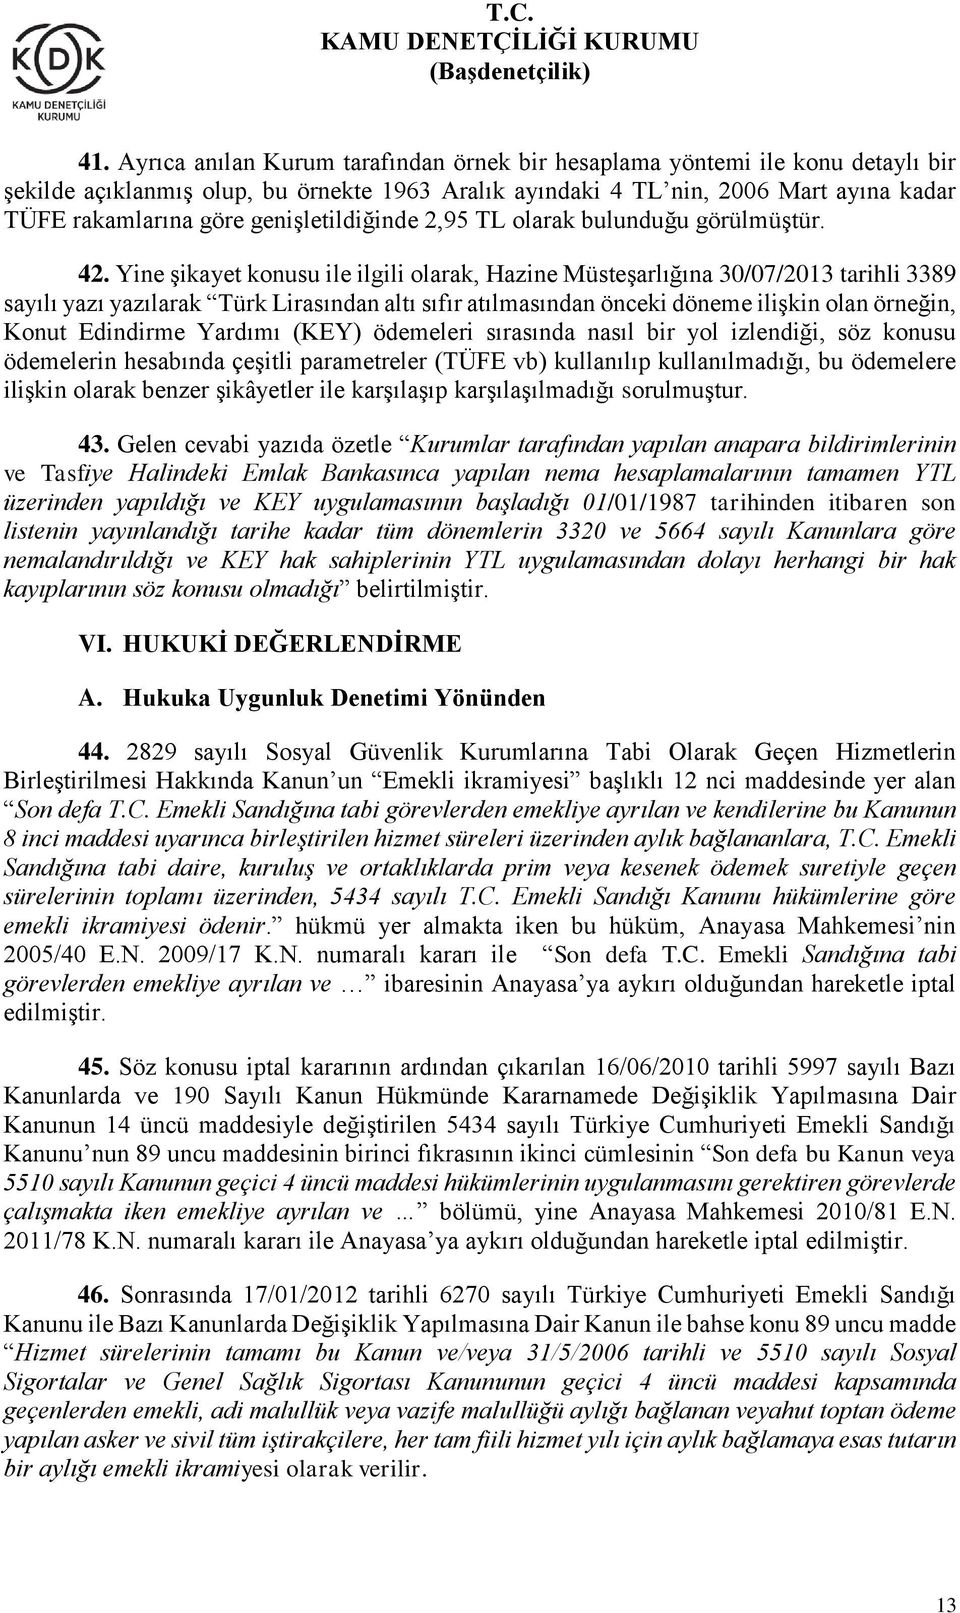 Yine şikayet konusu ile ilgili olarak, Hazine Müsteşarlığına 30/07/2013 tarihli 3389 sayılı yazı yazılarak Türk Lirasından altı sıfır atılmasından önceki döneme ilişkin olan örneğin, Konut Edindirme